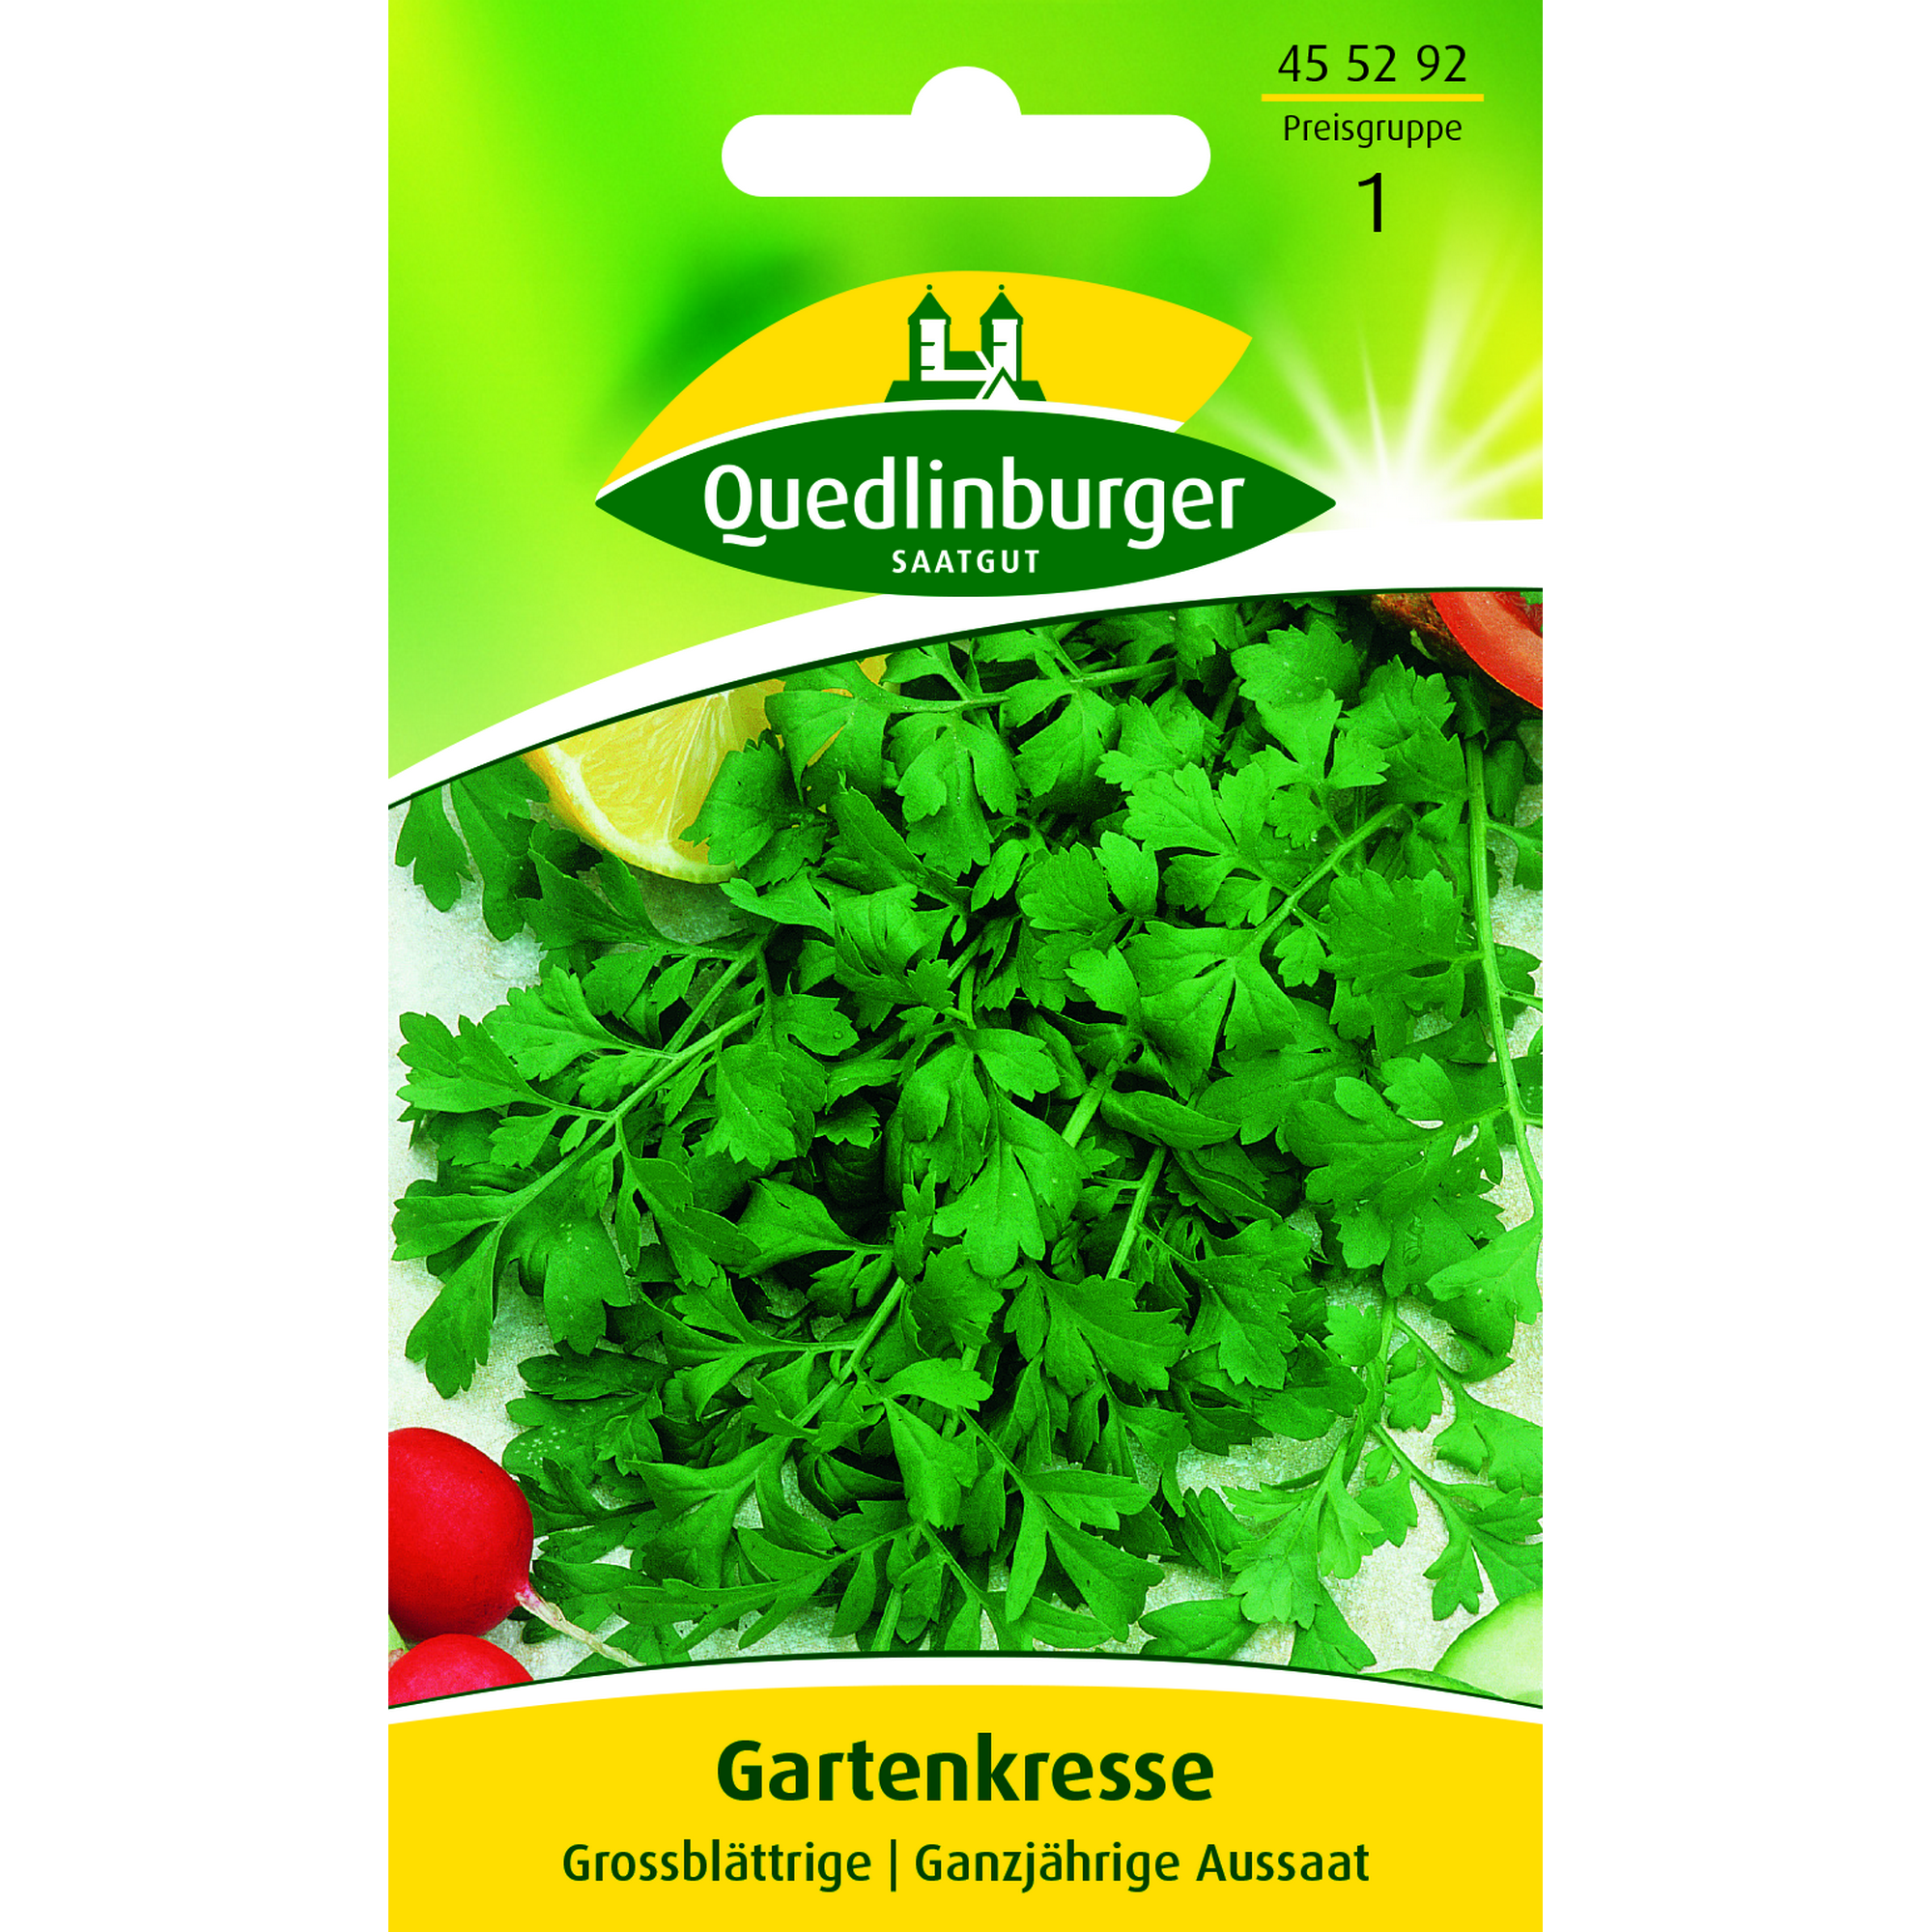 Gartenkresse Großblättrige + product picture